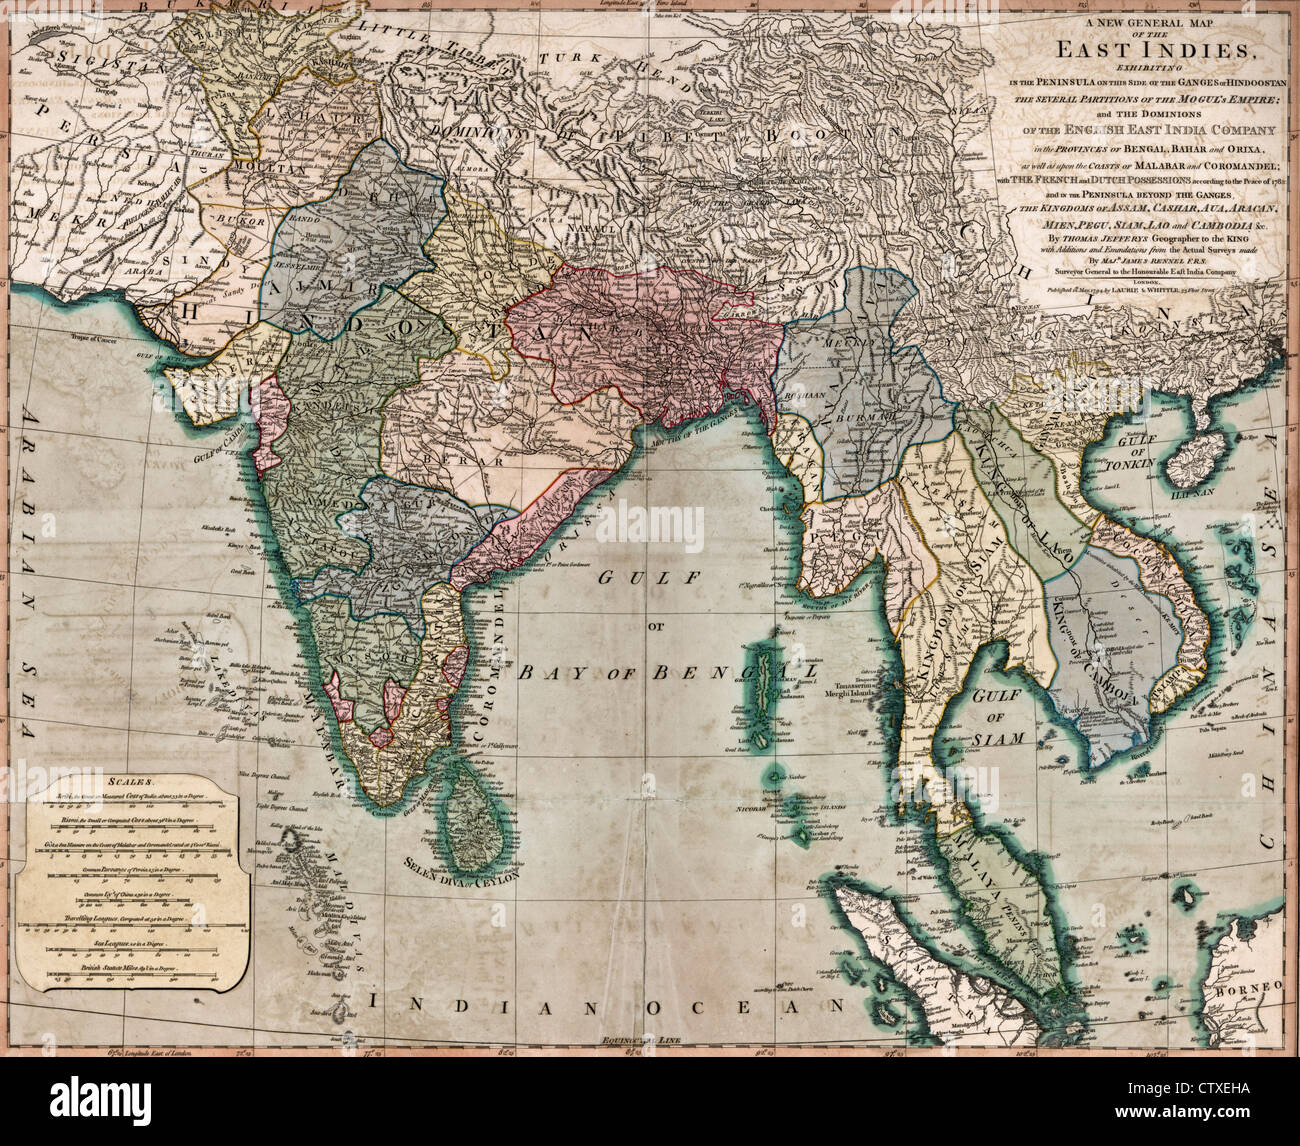 Un mapa general de las Indias Orientales, circa 1794 Foto de stock